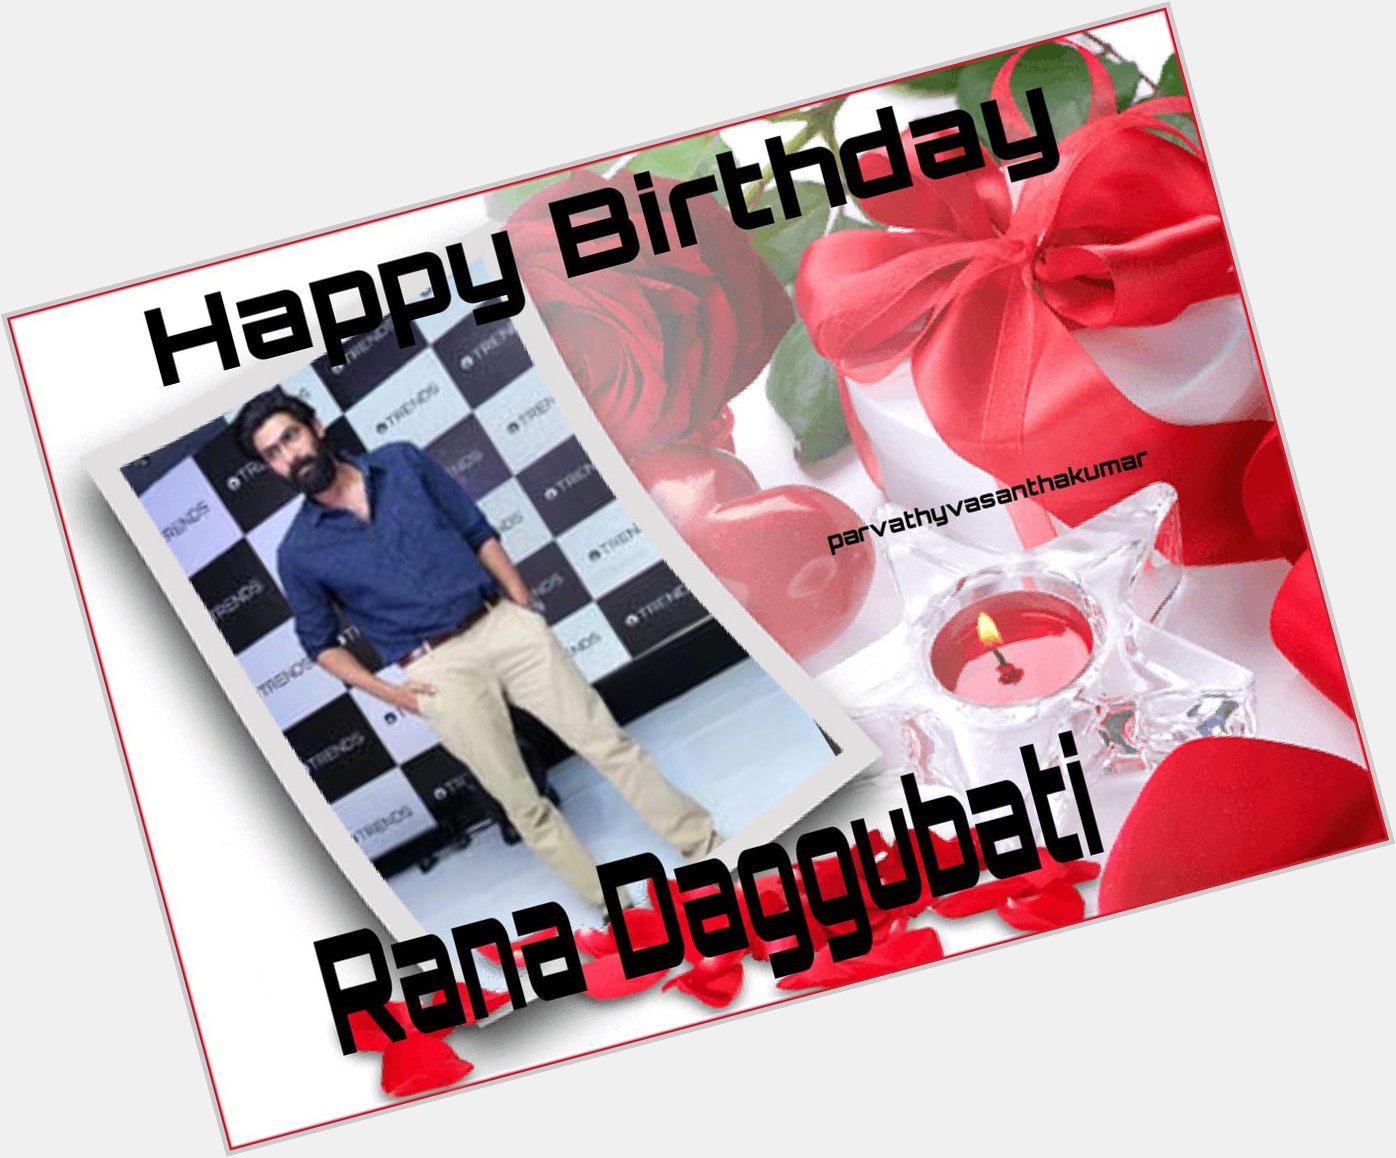 Happy birthday
Rana daggubati   